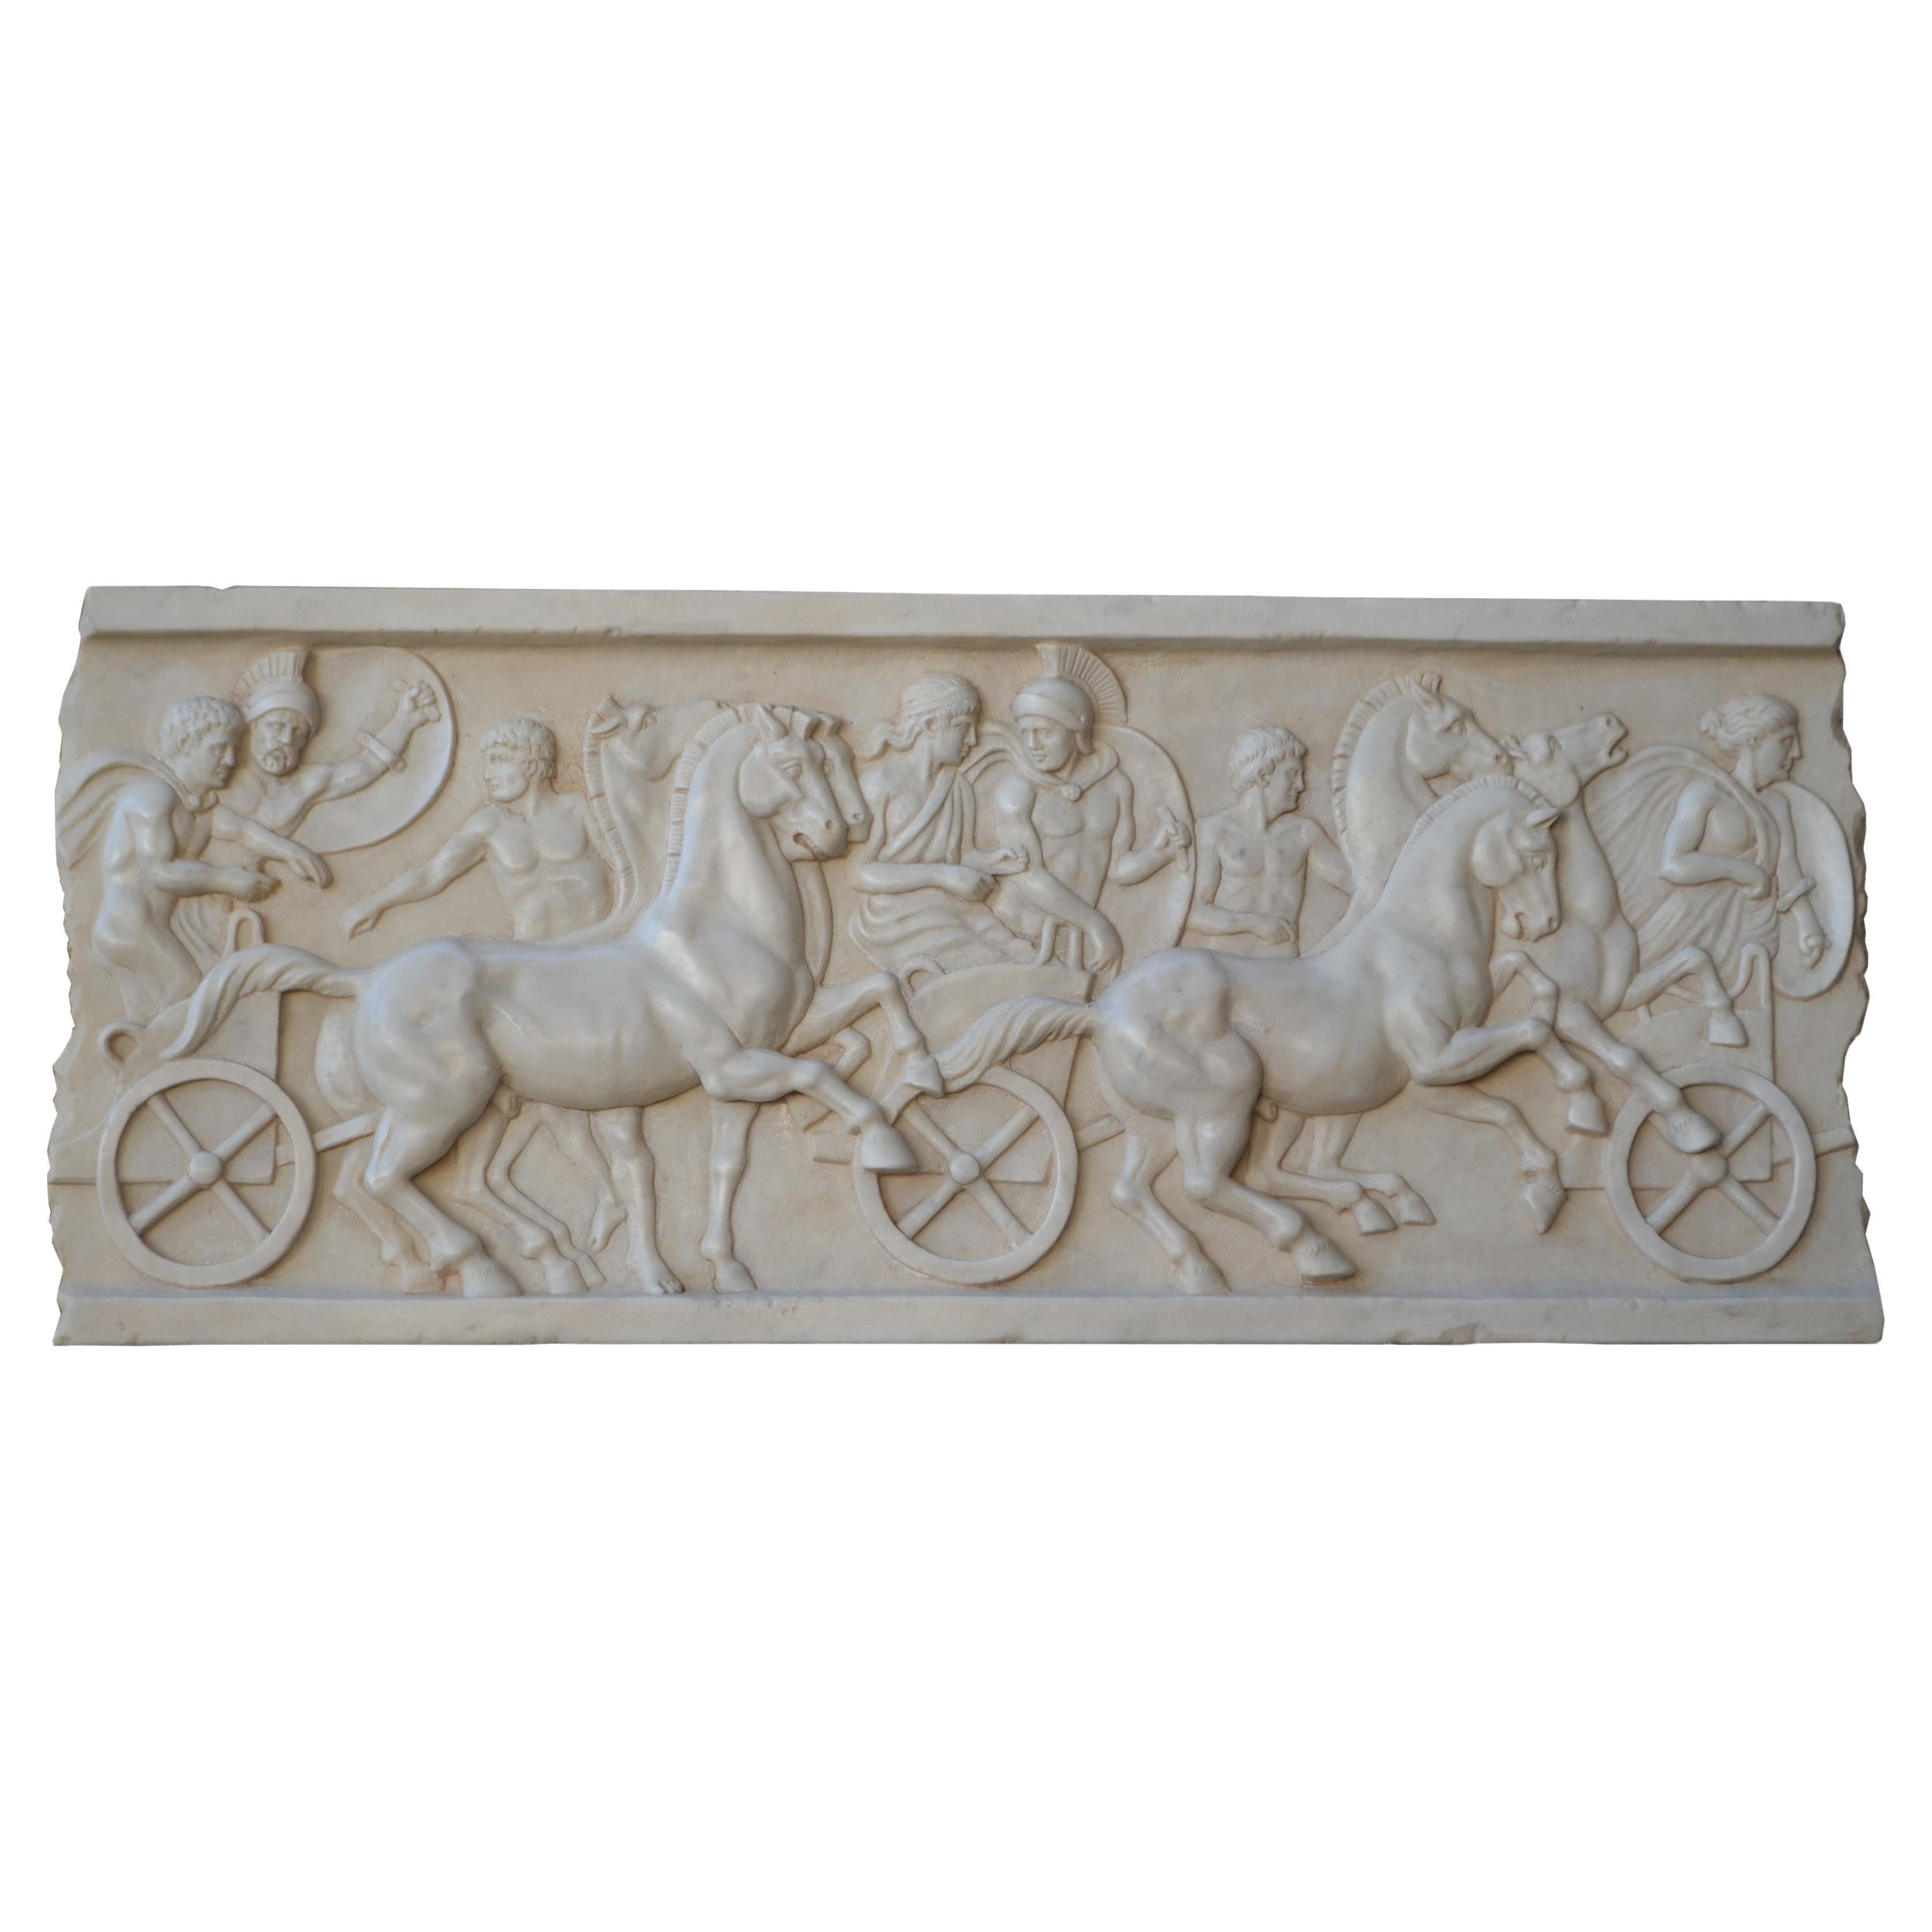 Altorilievo con scène di cavalli e bighe romane scolpito en marmo bianco Carrara